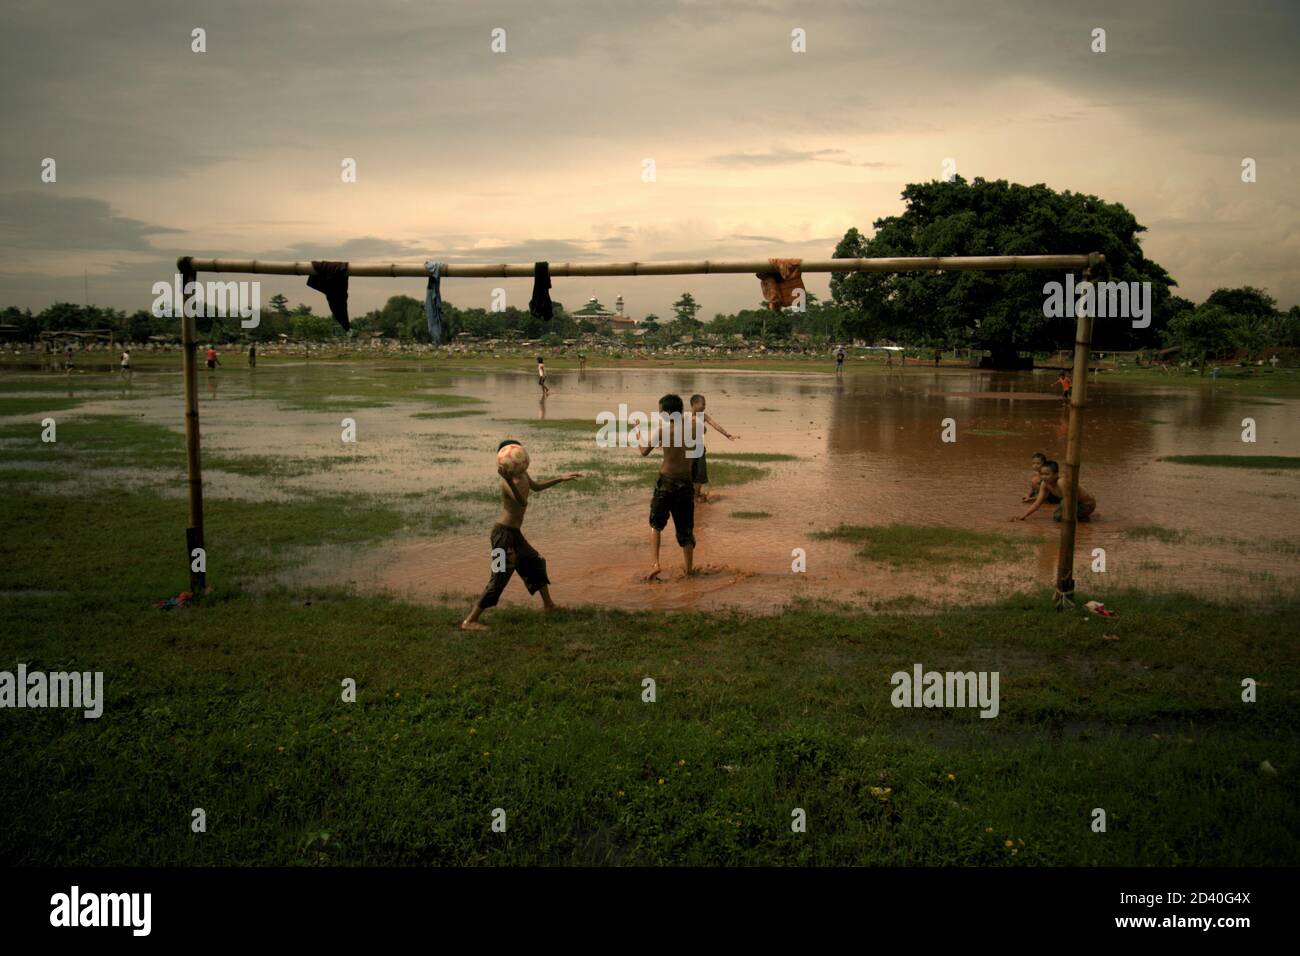 Les enfants jouent au football sur un terrain partiellement inondé, situé entre deux cimetières publics à Pondok Kelapa, Jakarta, Indonésie. Banque D'Images